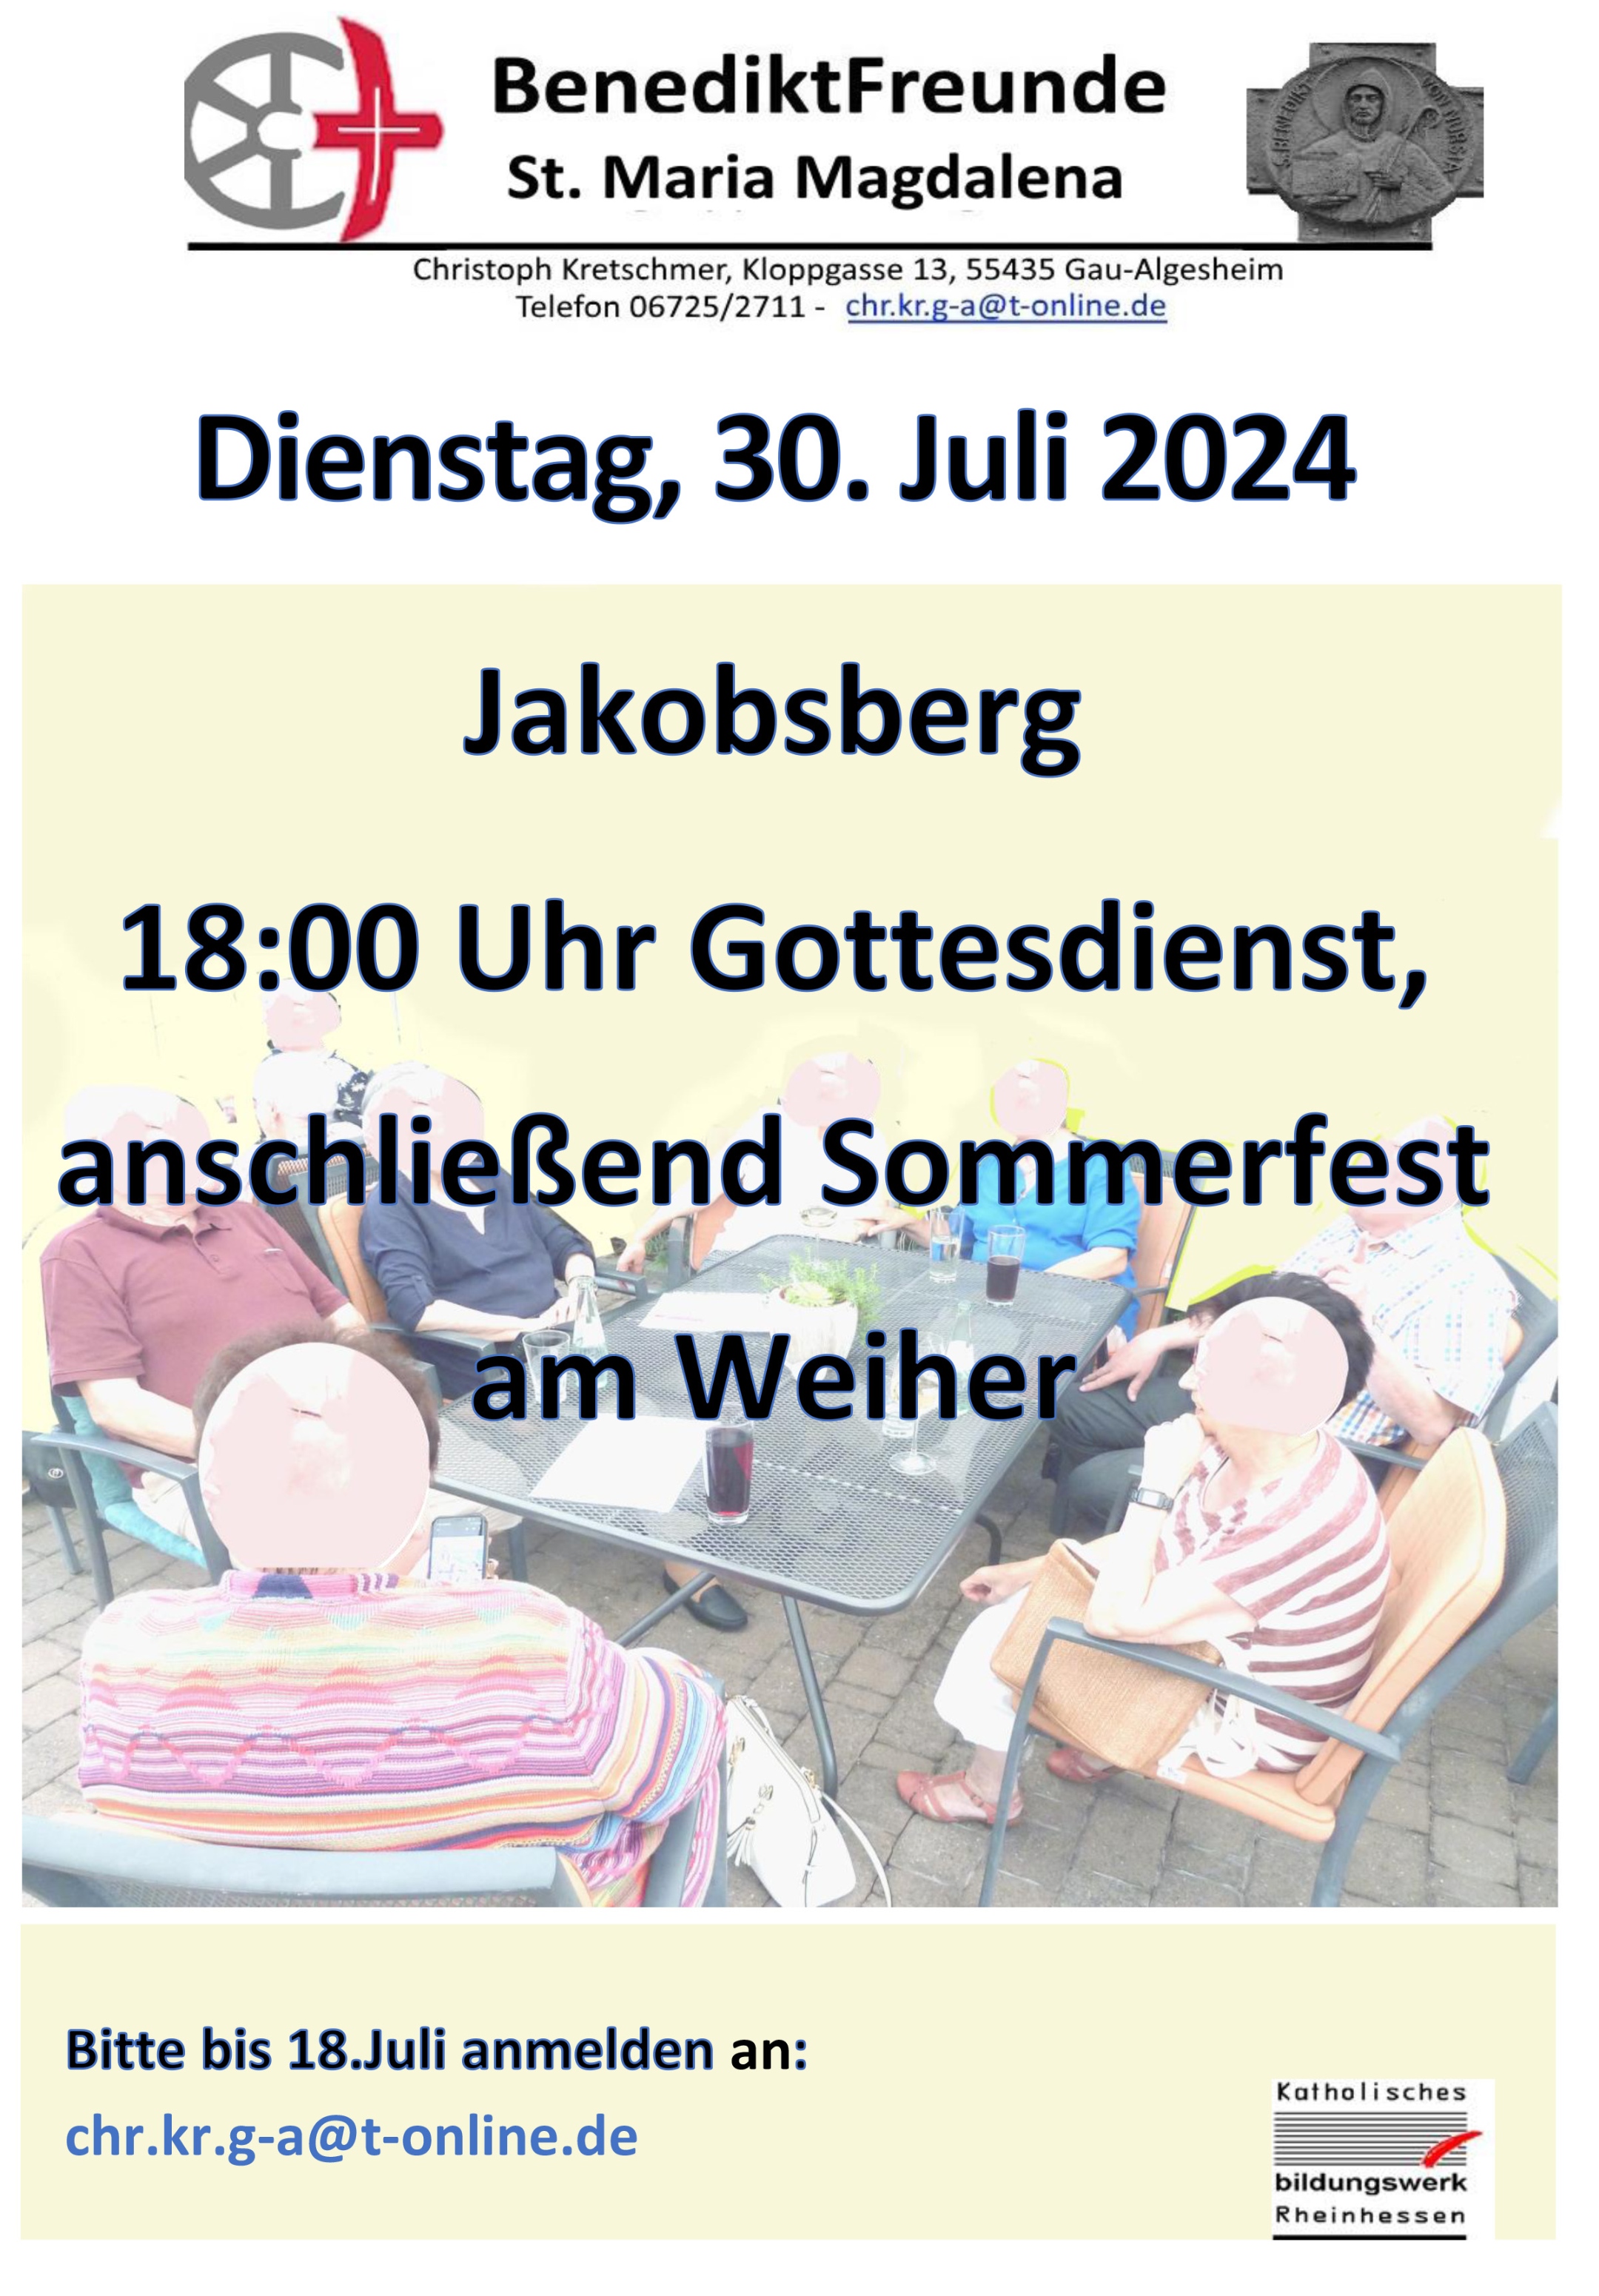 BenediktFreunde-Herzliche Einladung 30.Juli 2024